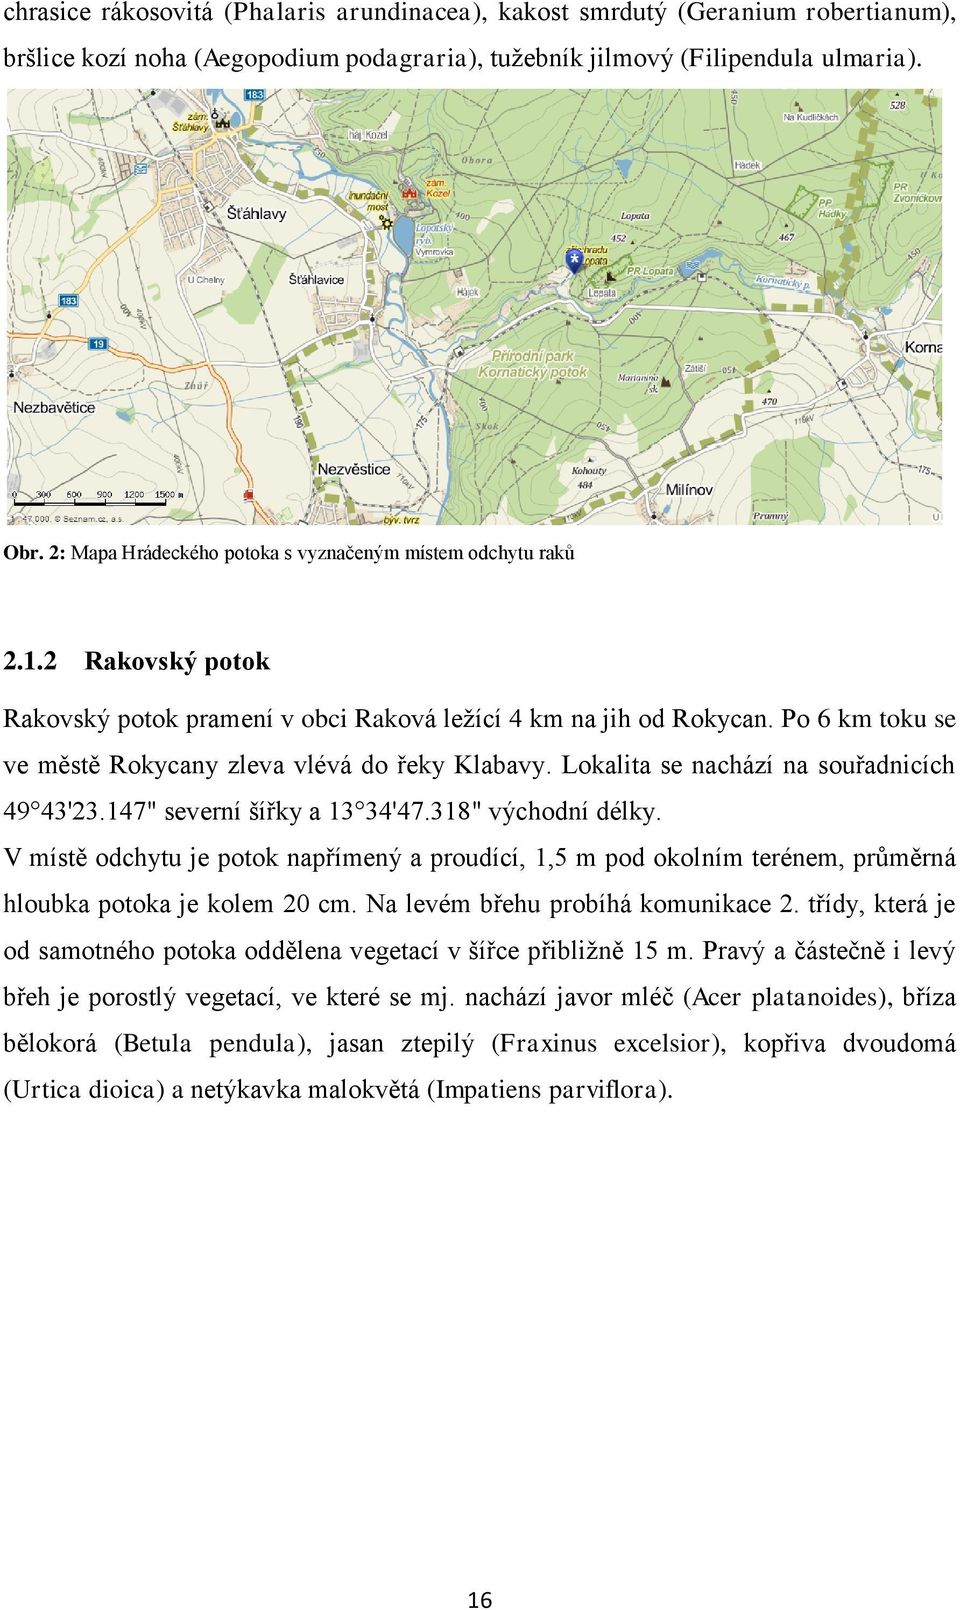 Po 6 km toku se ve městě Rokycany zleva vlévá do řeky Klabavy. Lokalita se nachází na souřadnicích 49 43'23.147" severní šířky a 13 34'47.318" východní délky.